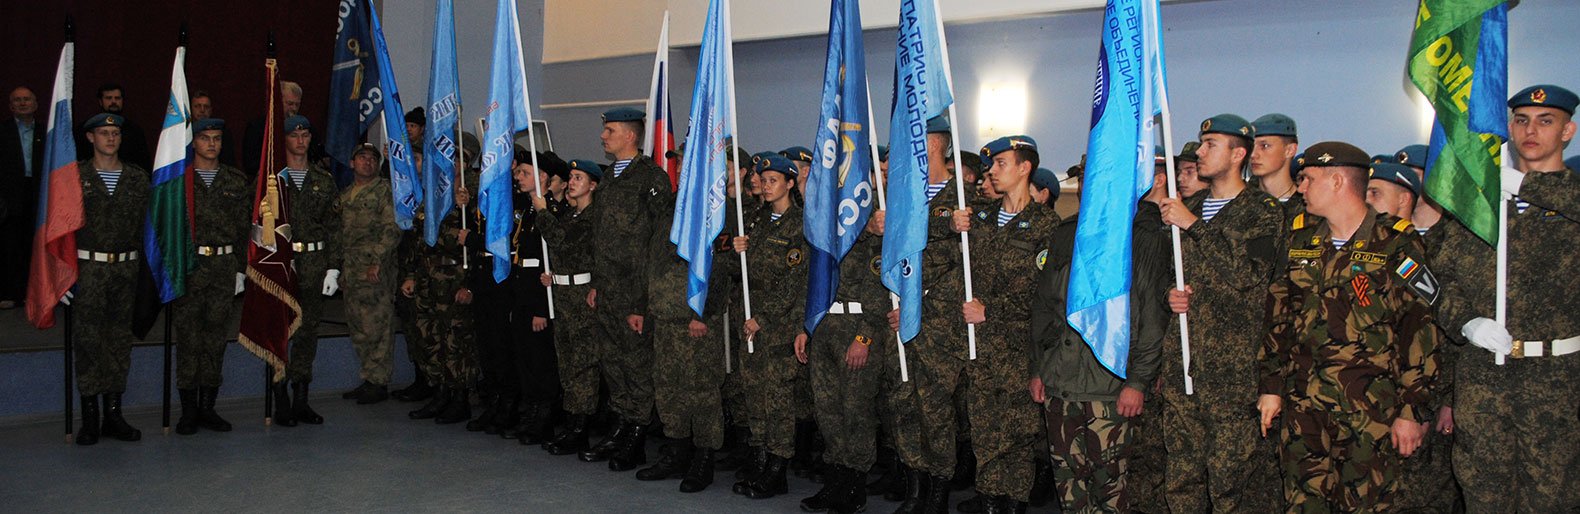 Военно-патриотическое объединение «Поколение» Белгородской области отмечает 20-летие